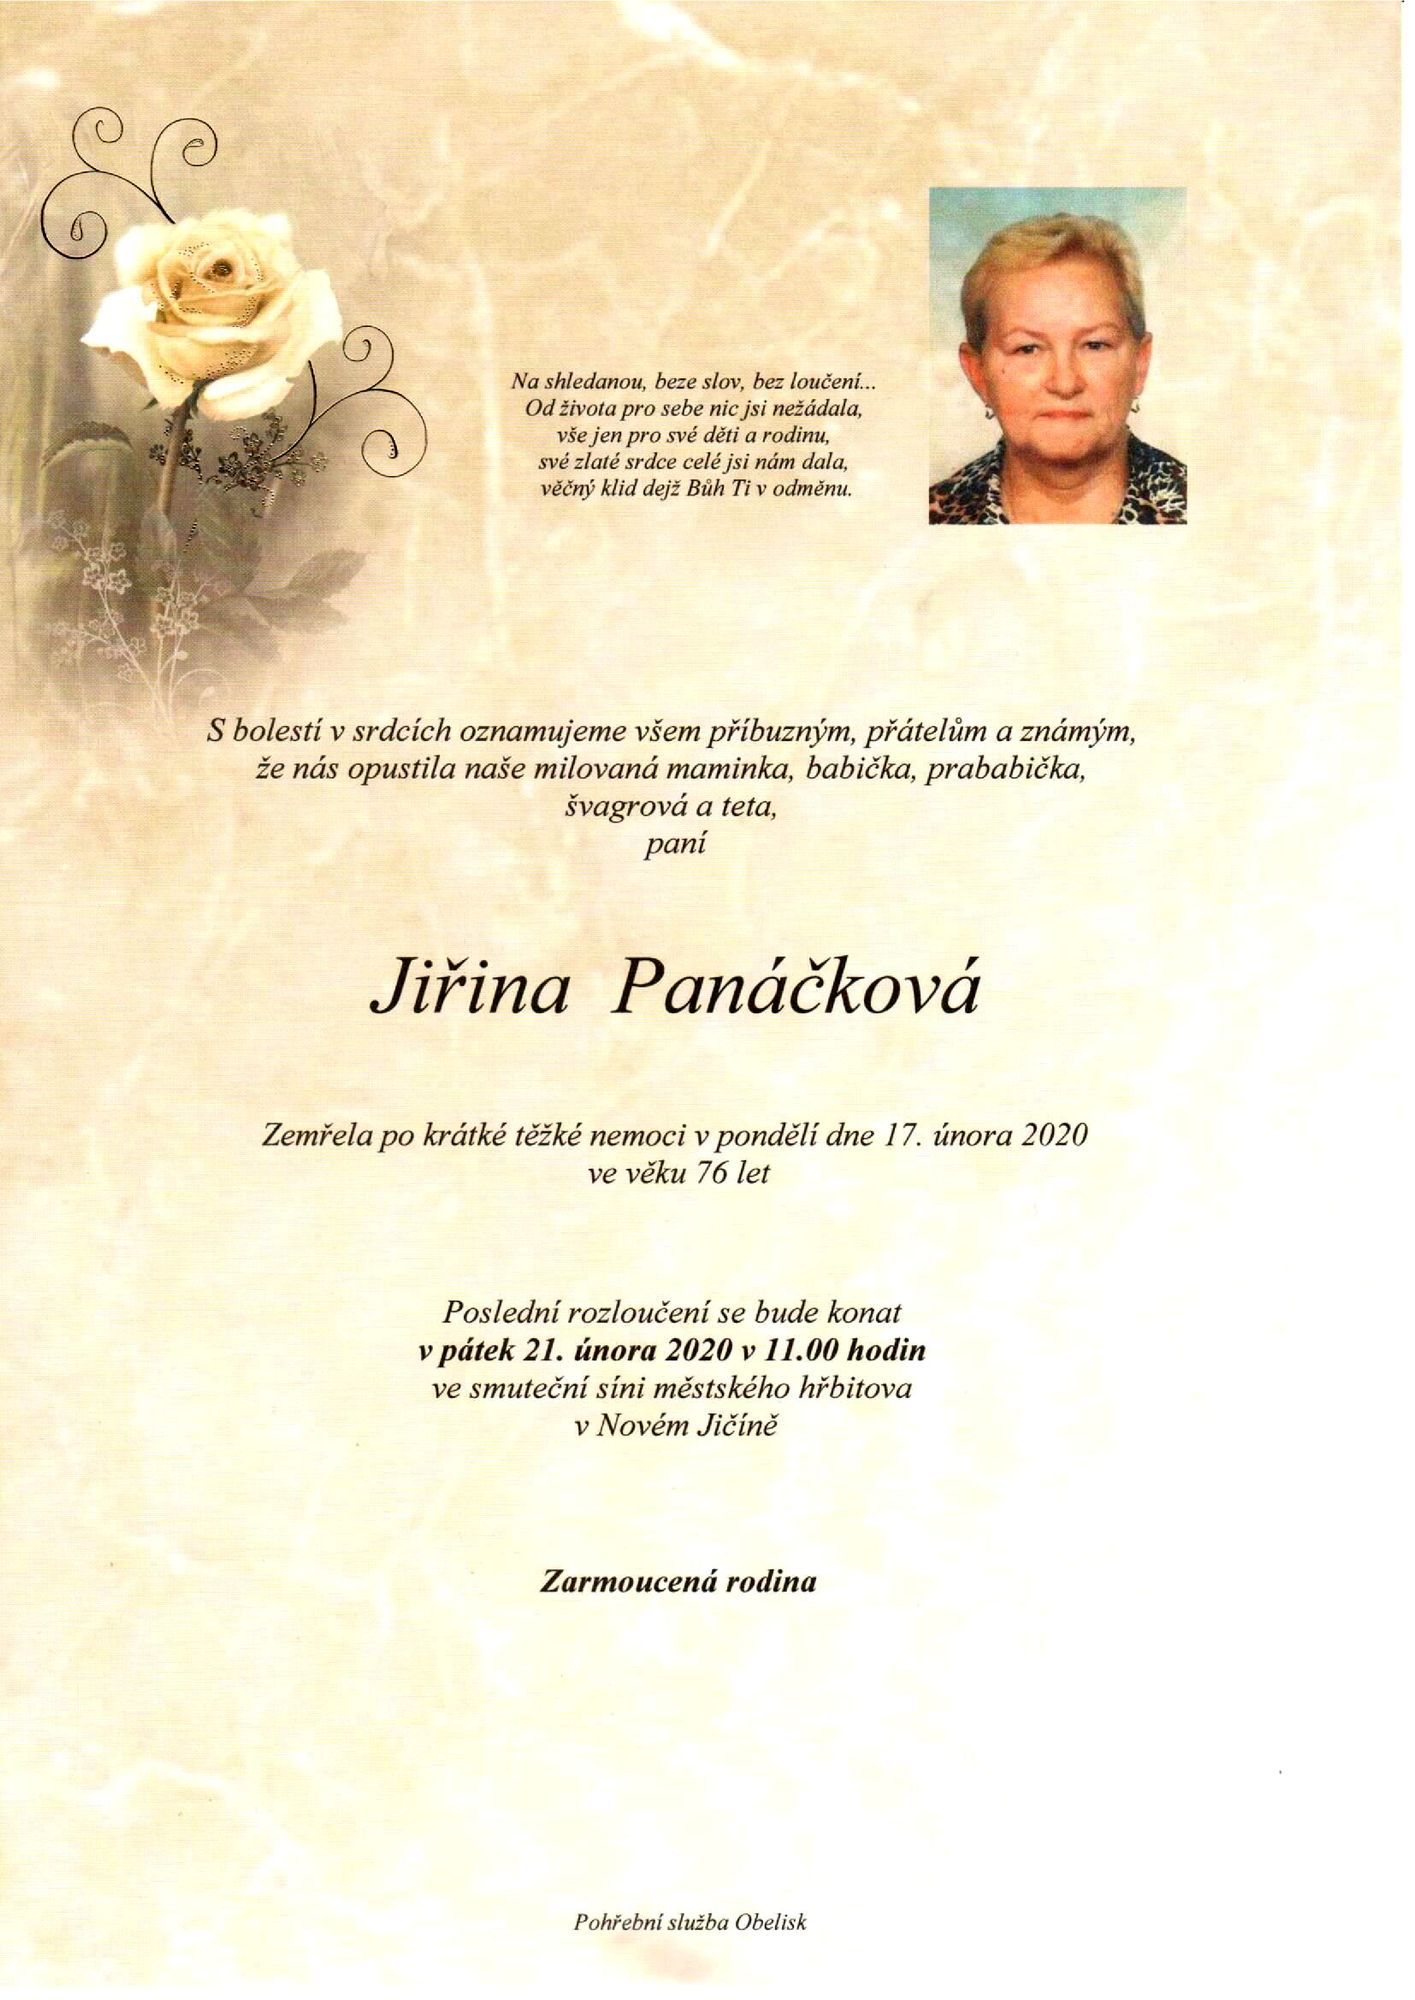 Jiřina Panáčková